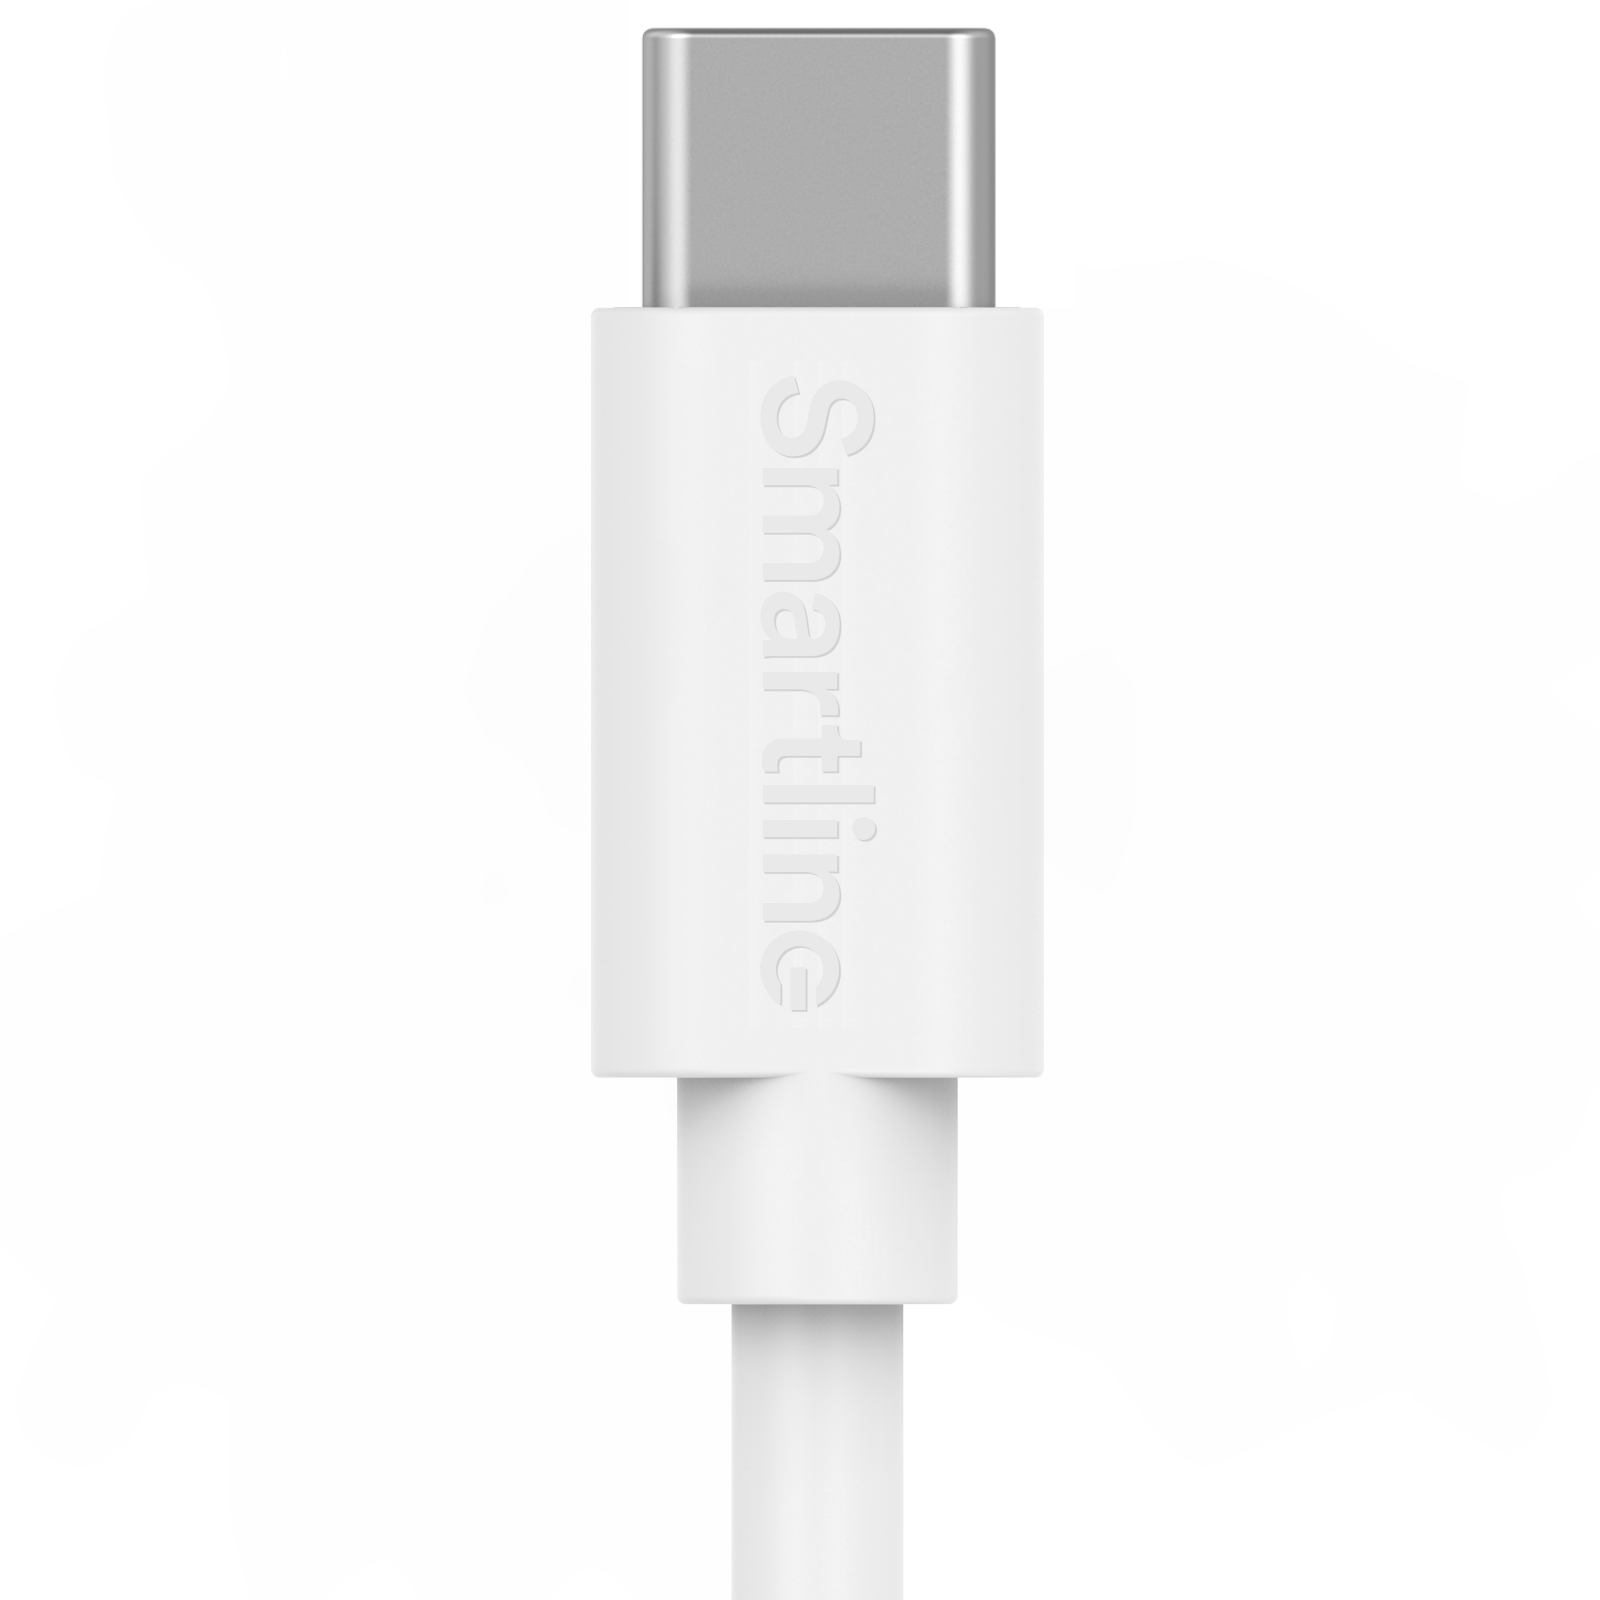 Cargador completo para Sony Xperia - Cable de 2m y cargador de pared USB-C - Smartline